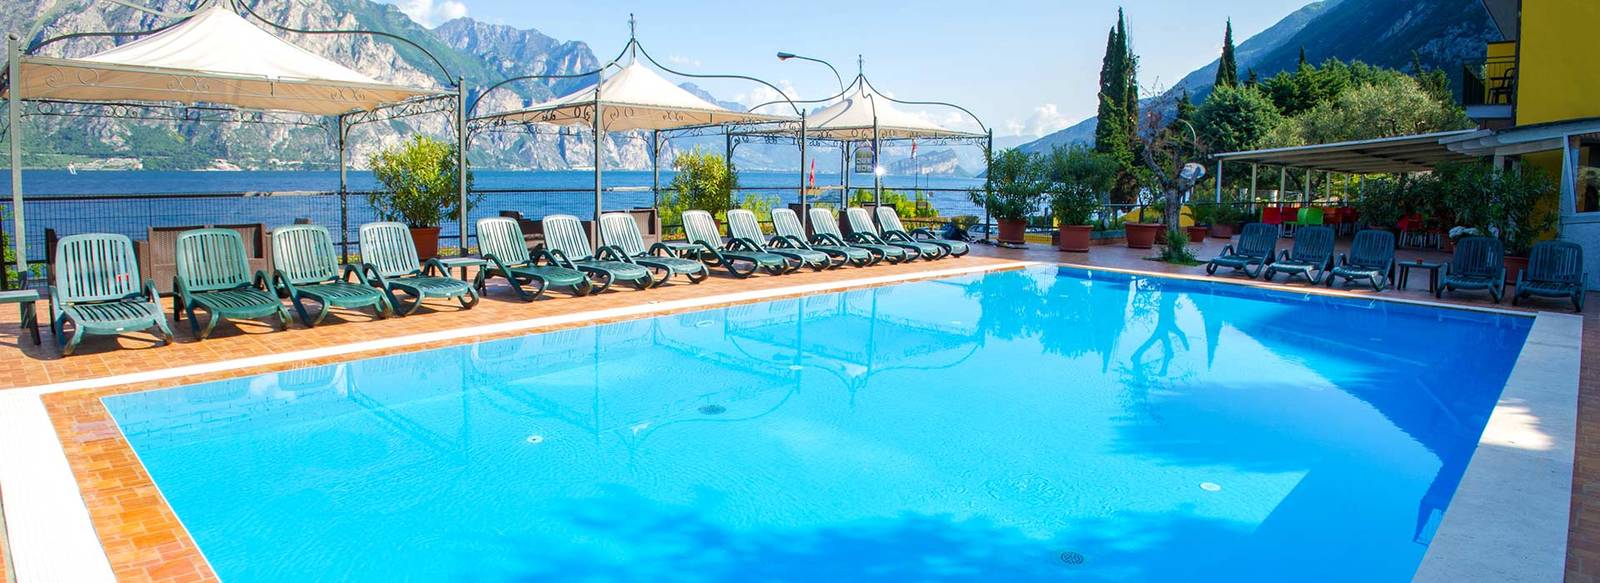 Vacanza attiva sul lago di Garda